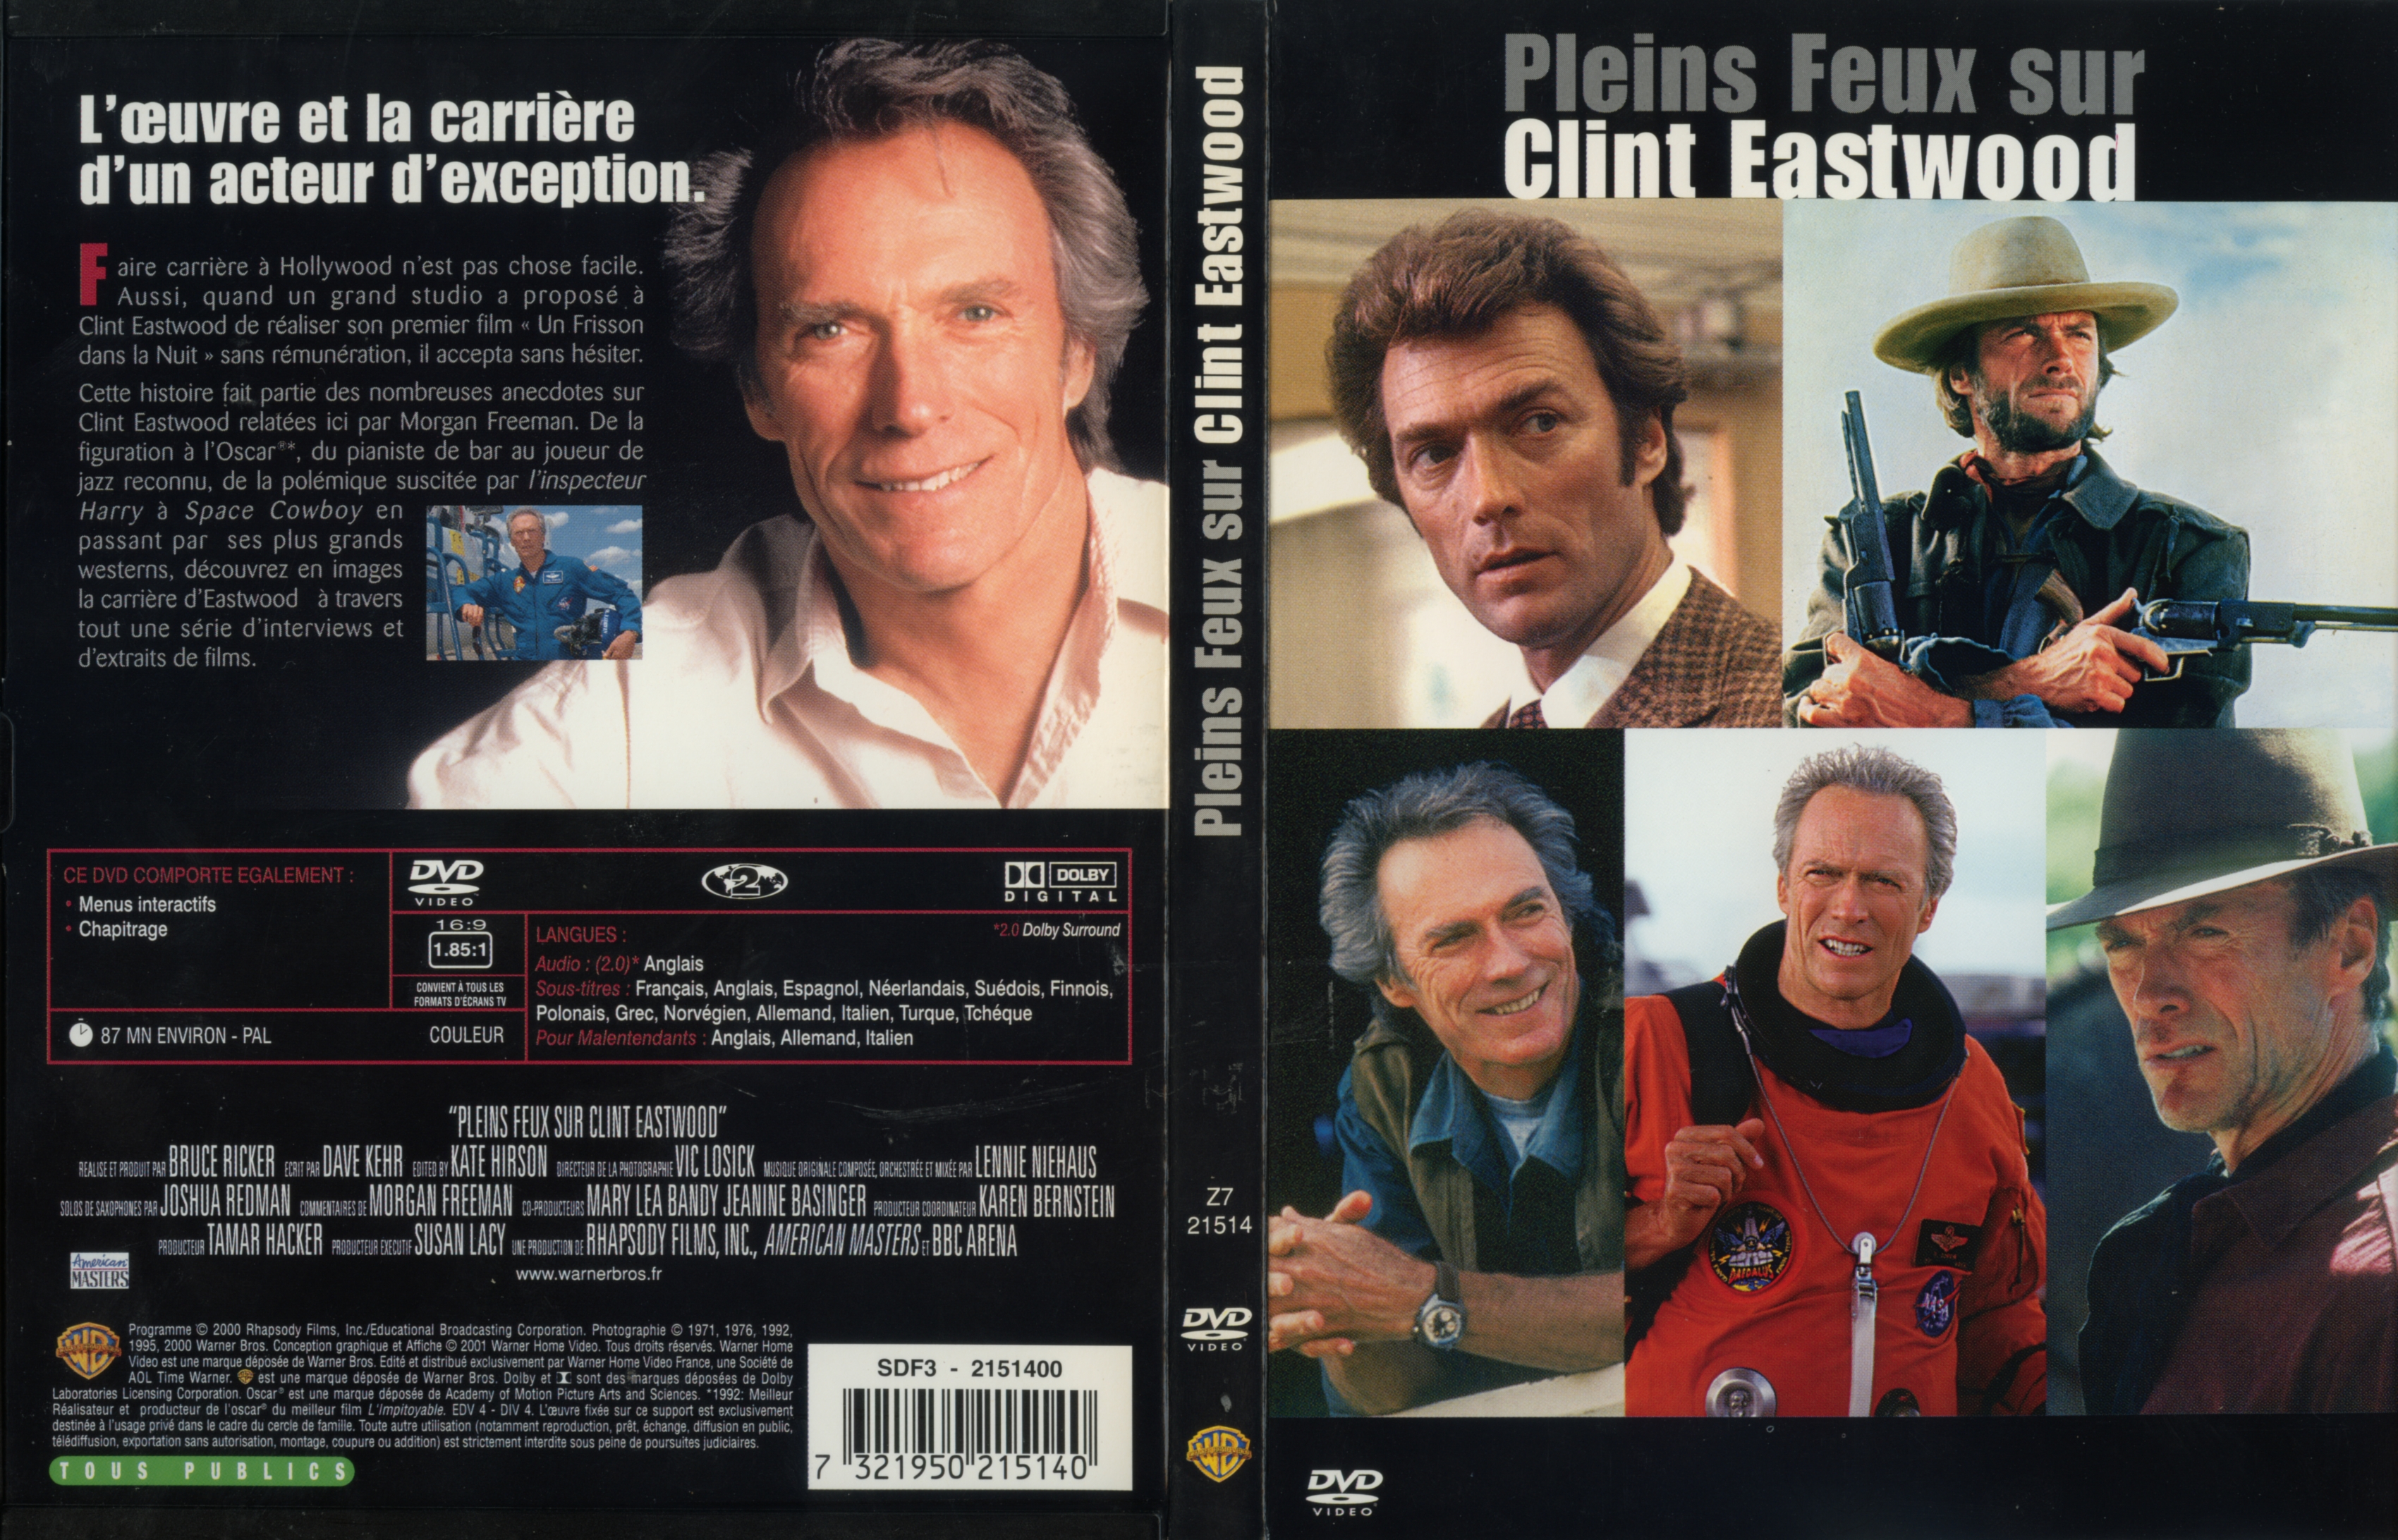 Jaquette DVD Pleins feux sur Clint Eastwood